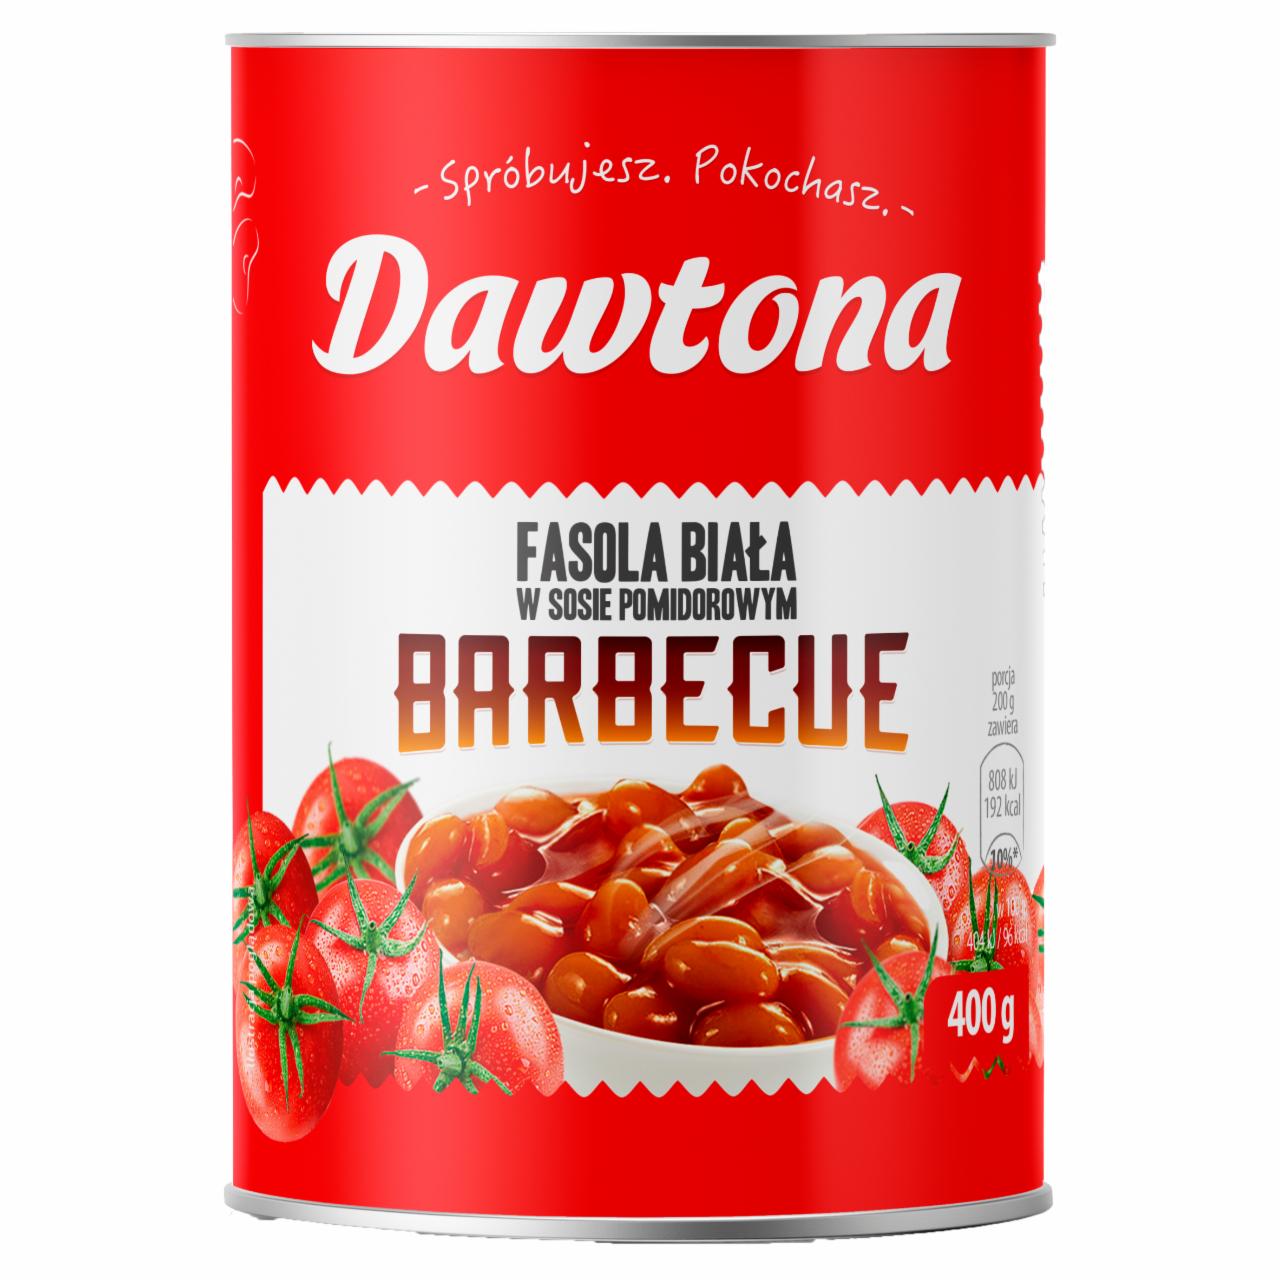 Zdjęcia - Dawtona Fasola biała w sosie pomidorowym barbecue 400 g